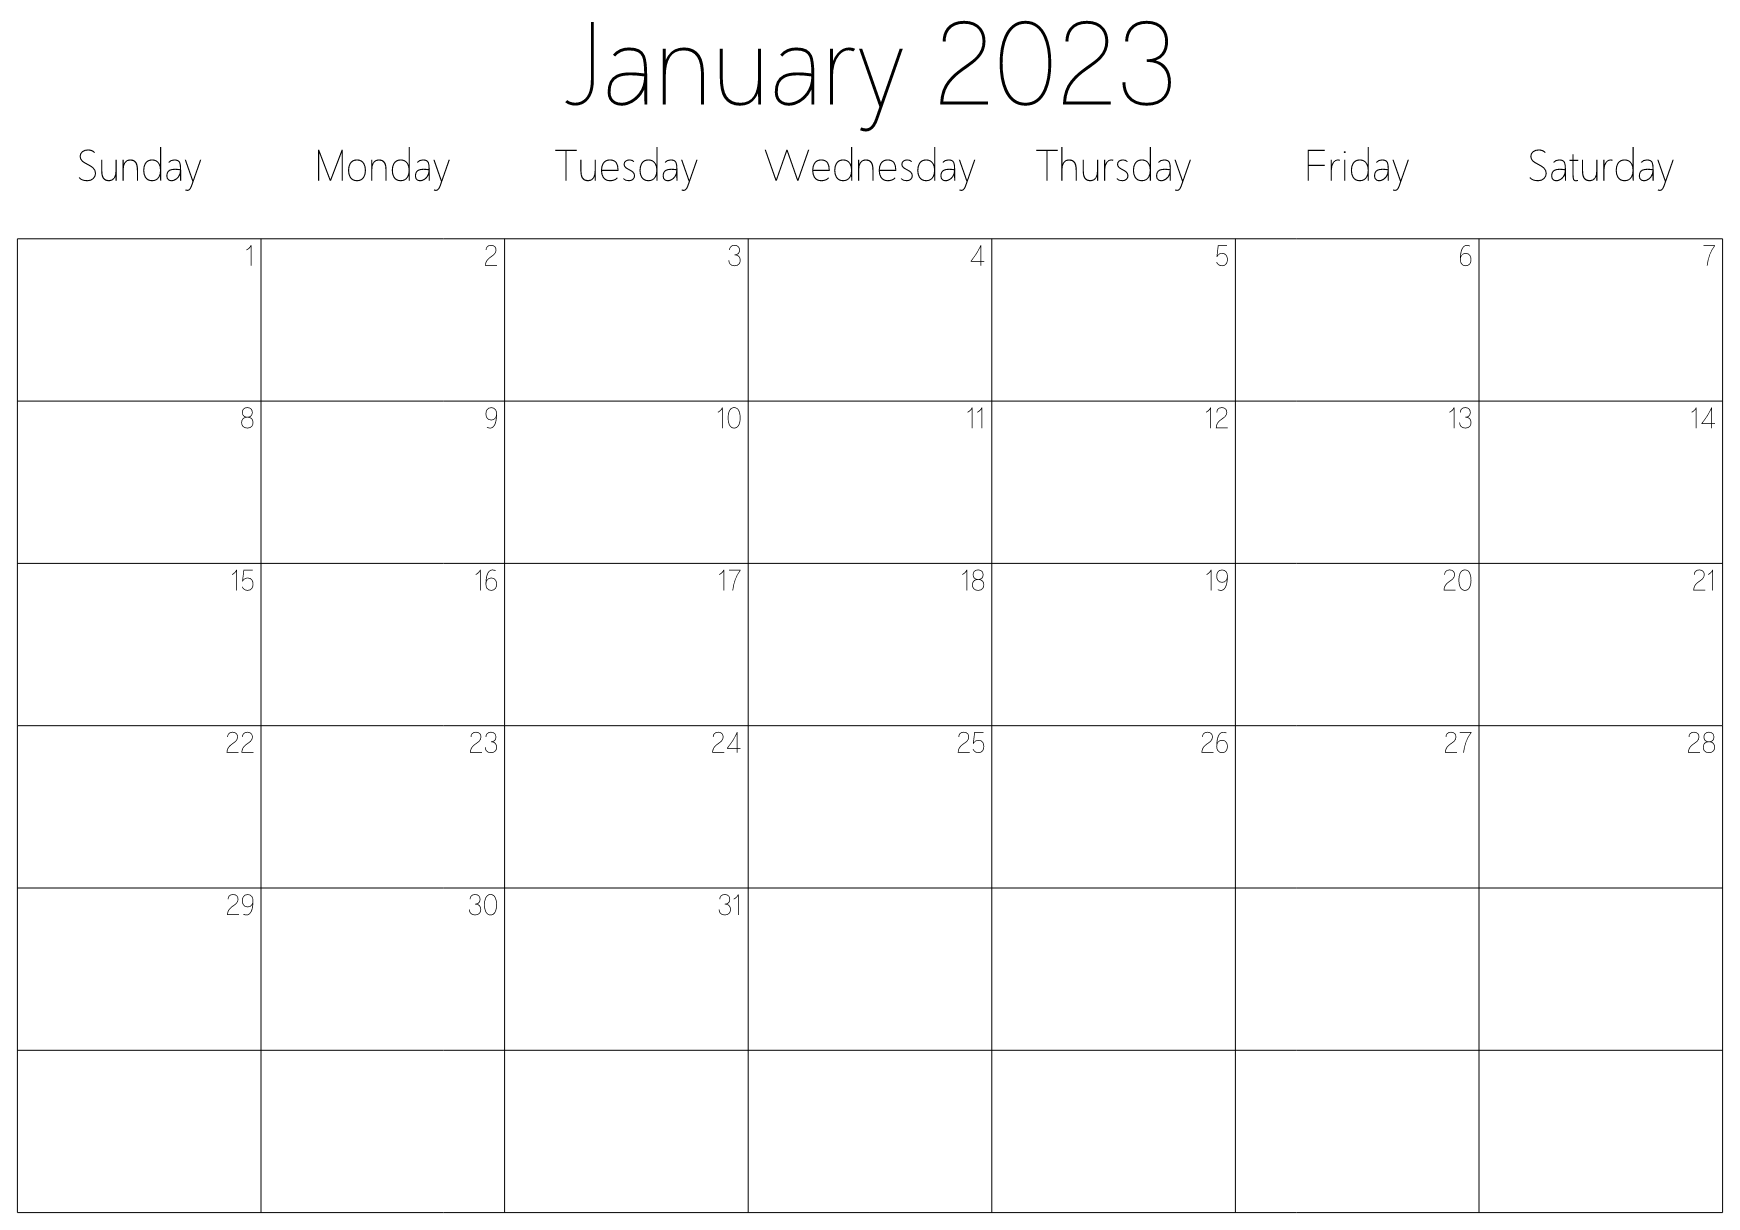 An example calendar